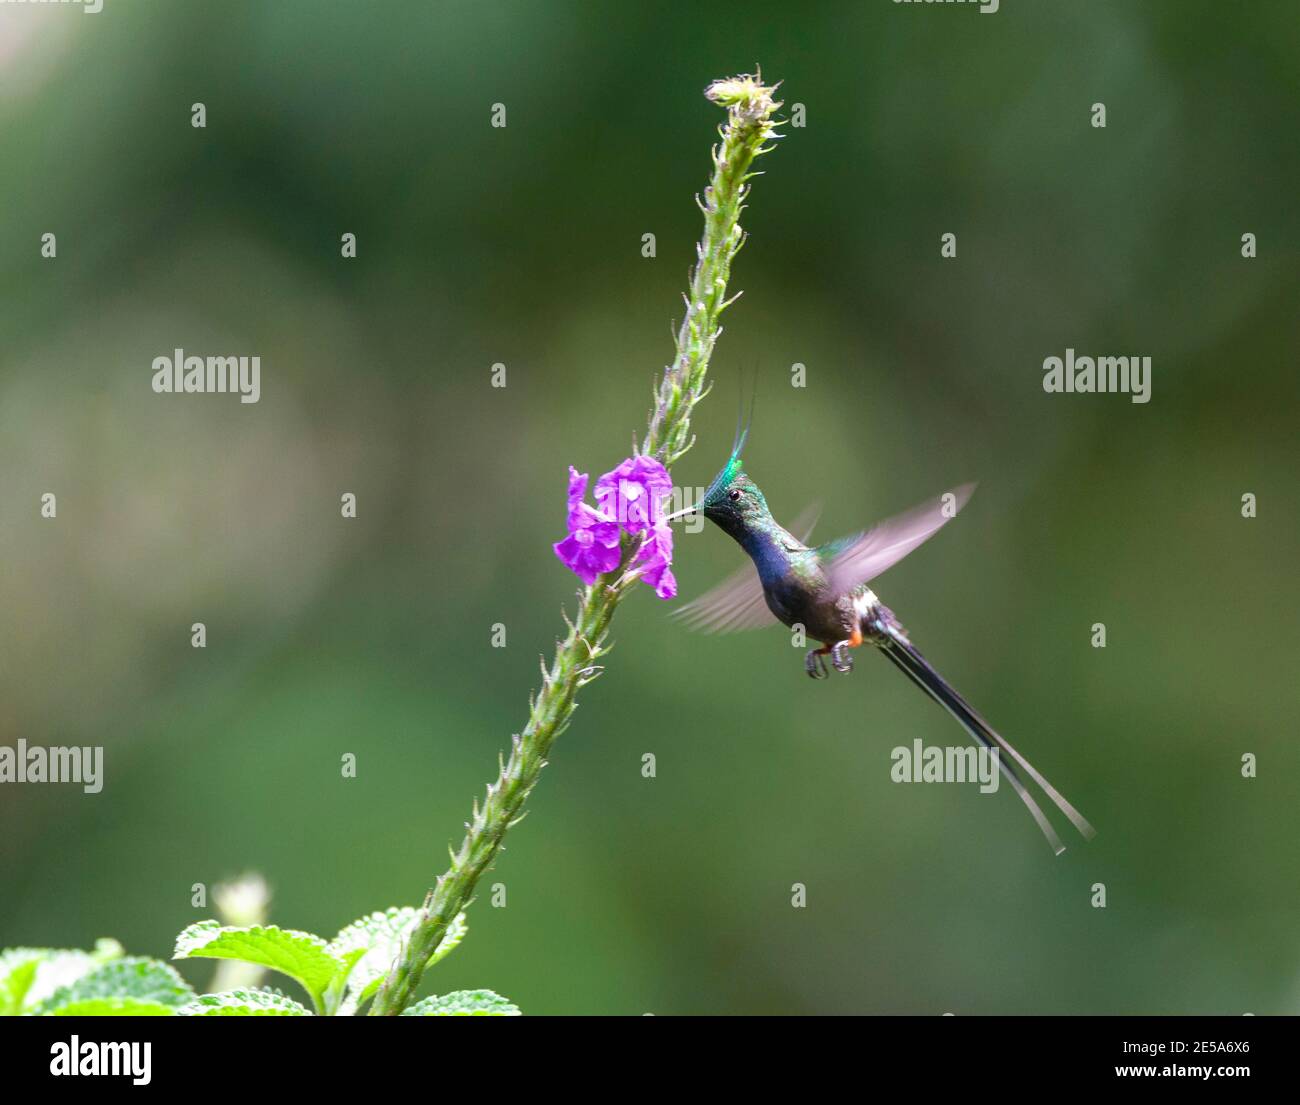 Cola de espino (Discosura popelairii), macho adulto que se alimenta de flores, Perú, Madre de Dios, Parque Nacional Manu Foto de stock